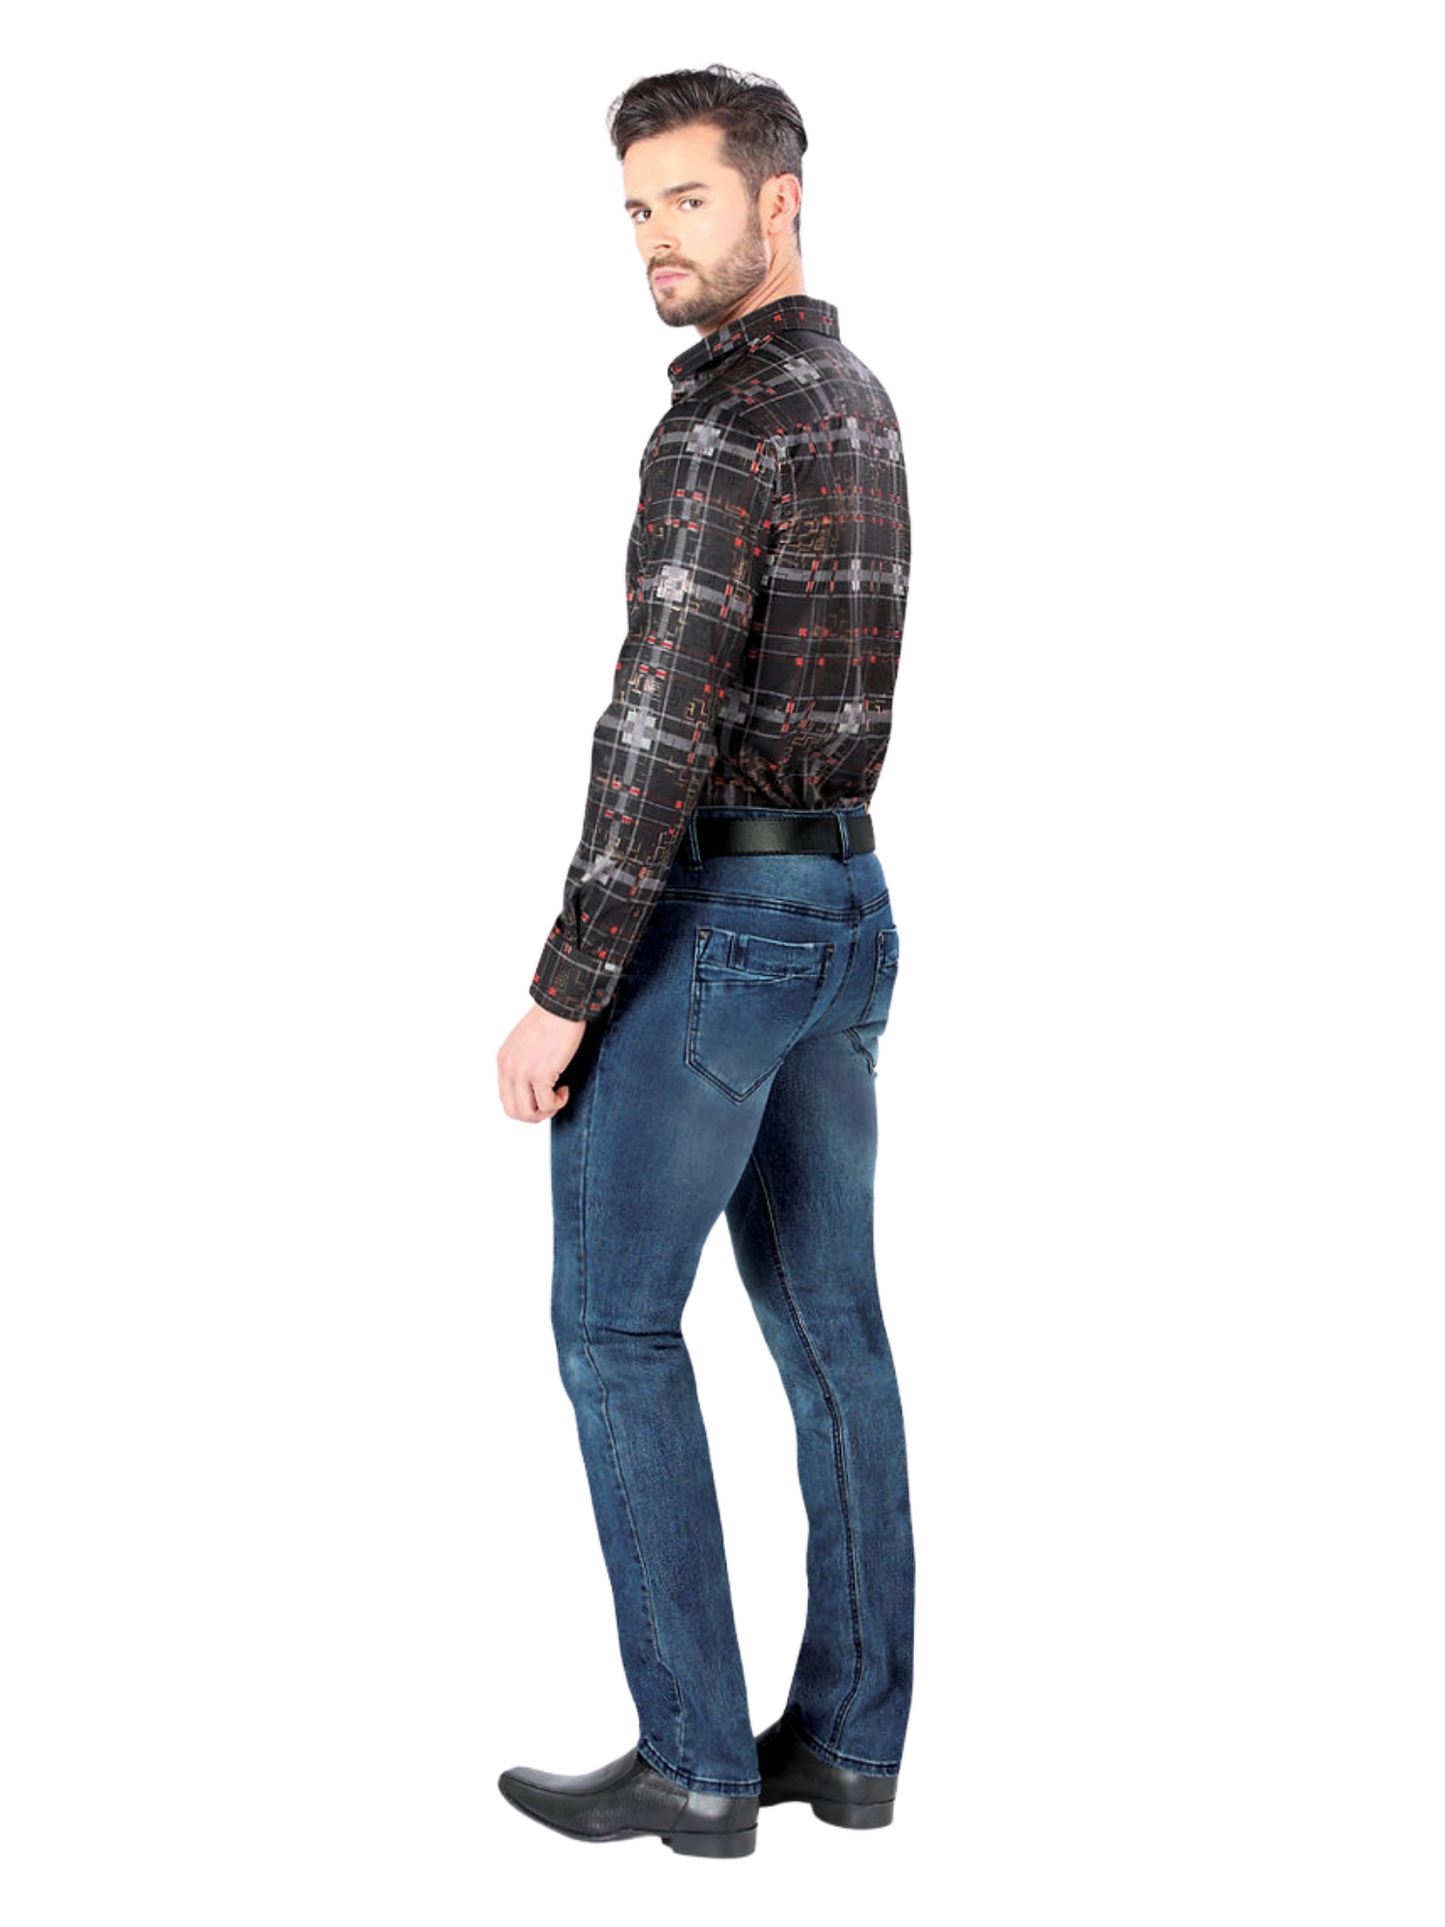 Pantalon Vaquero de Mezclilla Stretch para Hombre 'Montero' - ID: 5302 Pantalones de Vaquero Montero 